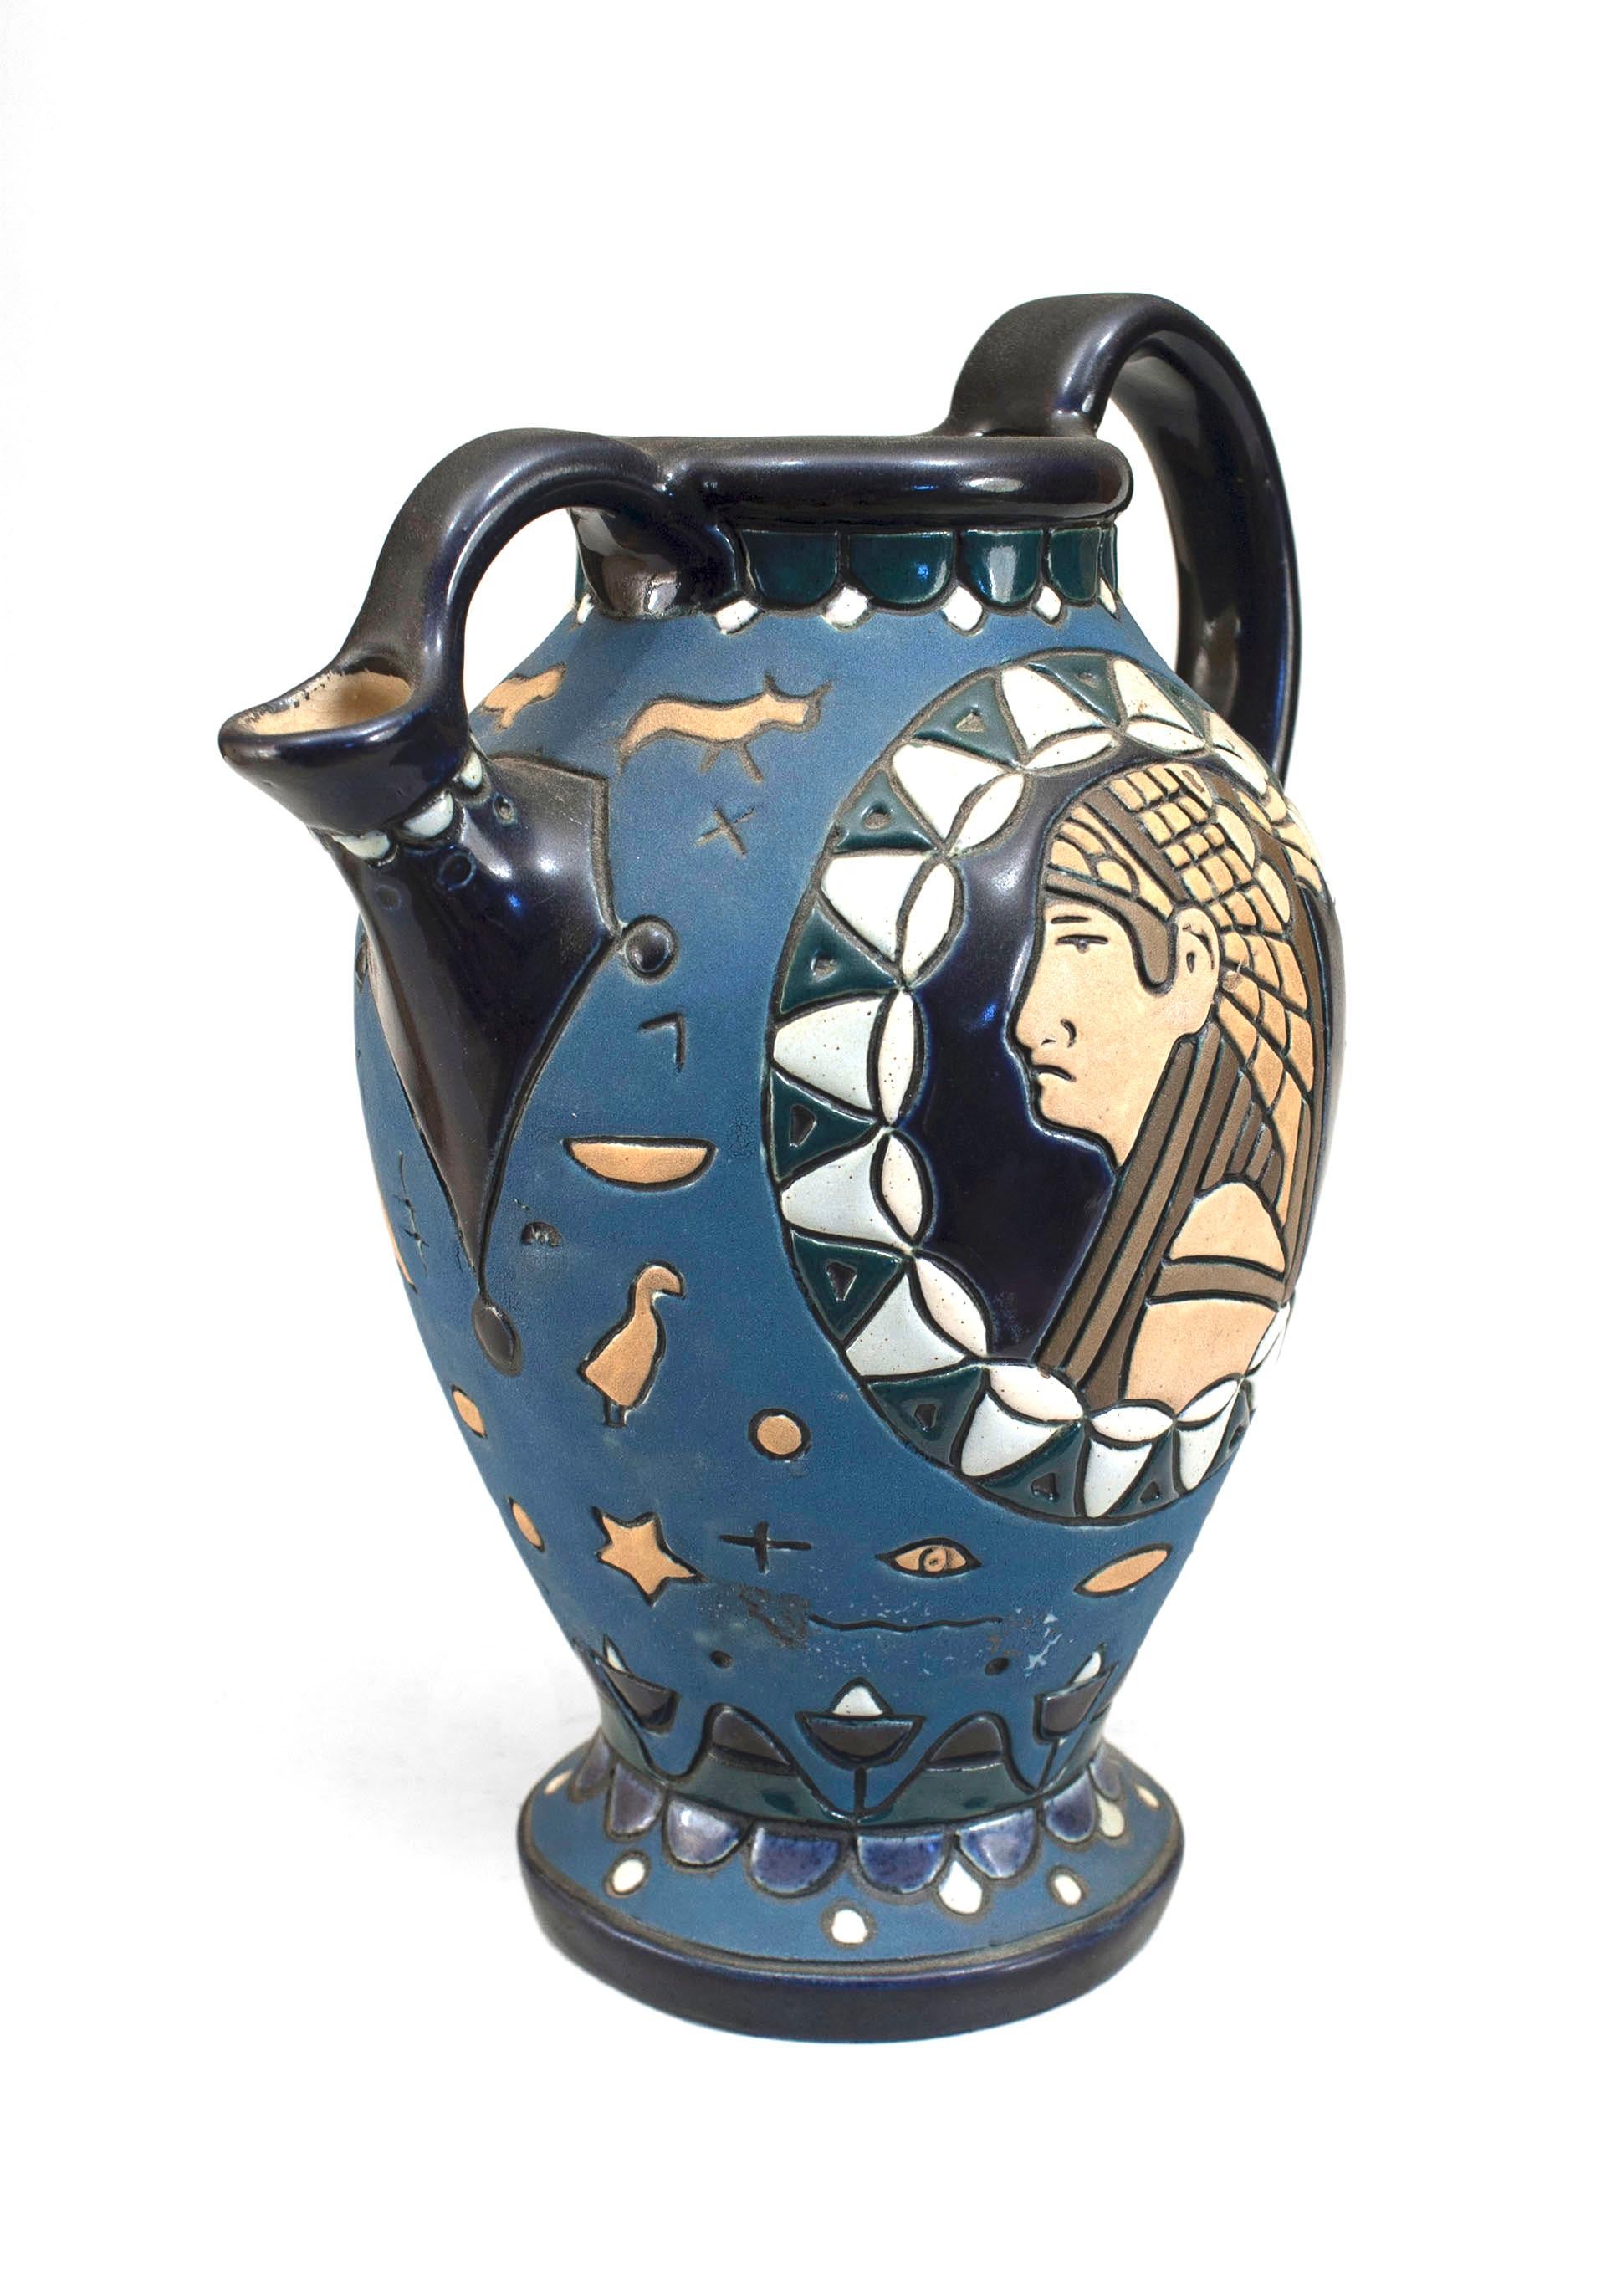 Petite cruche en amphore bleue et beige de style égyptien du Moyen Orient (1er quart du 20e siècle - Tchèque) avec figure et motifs de sphinx.